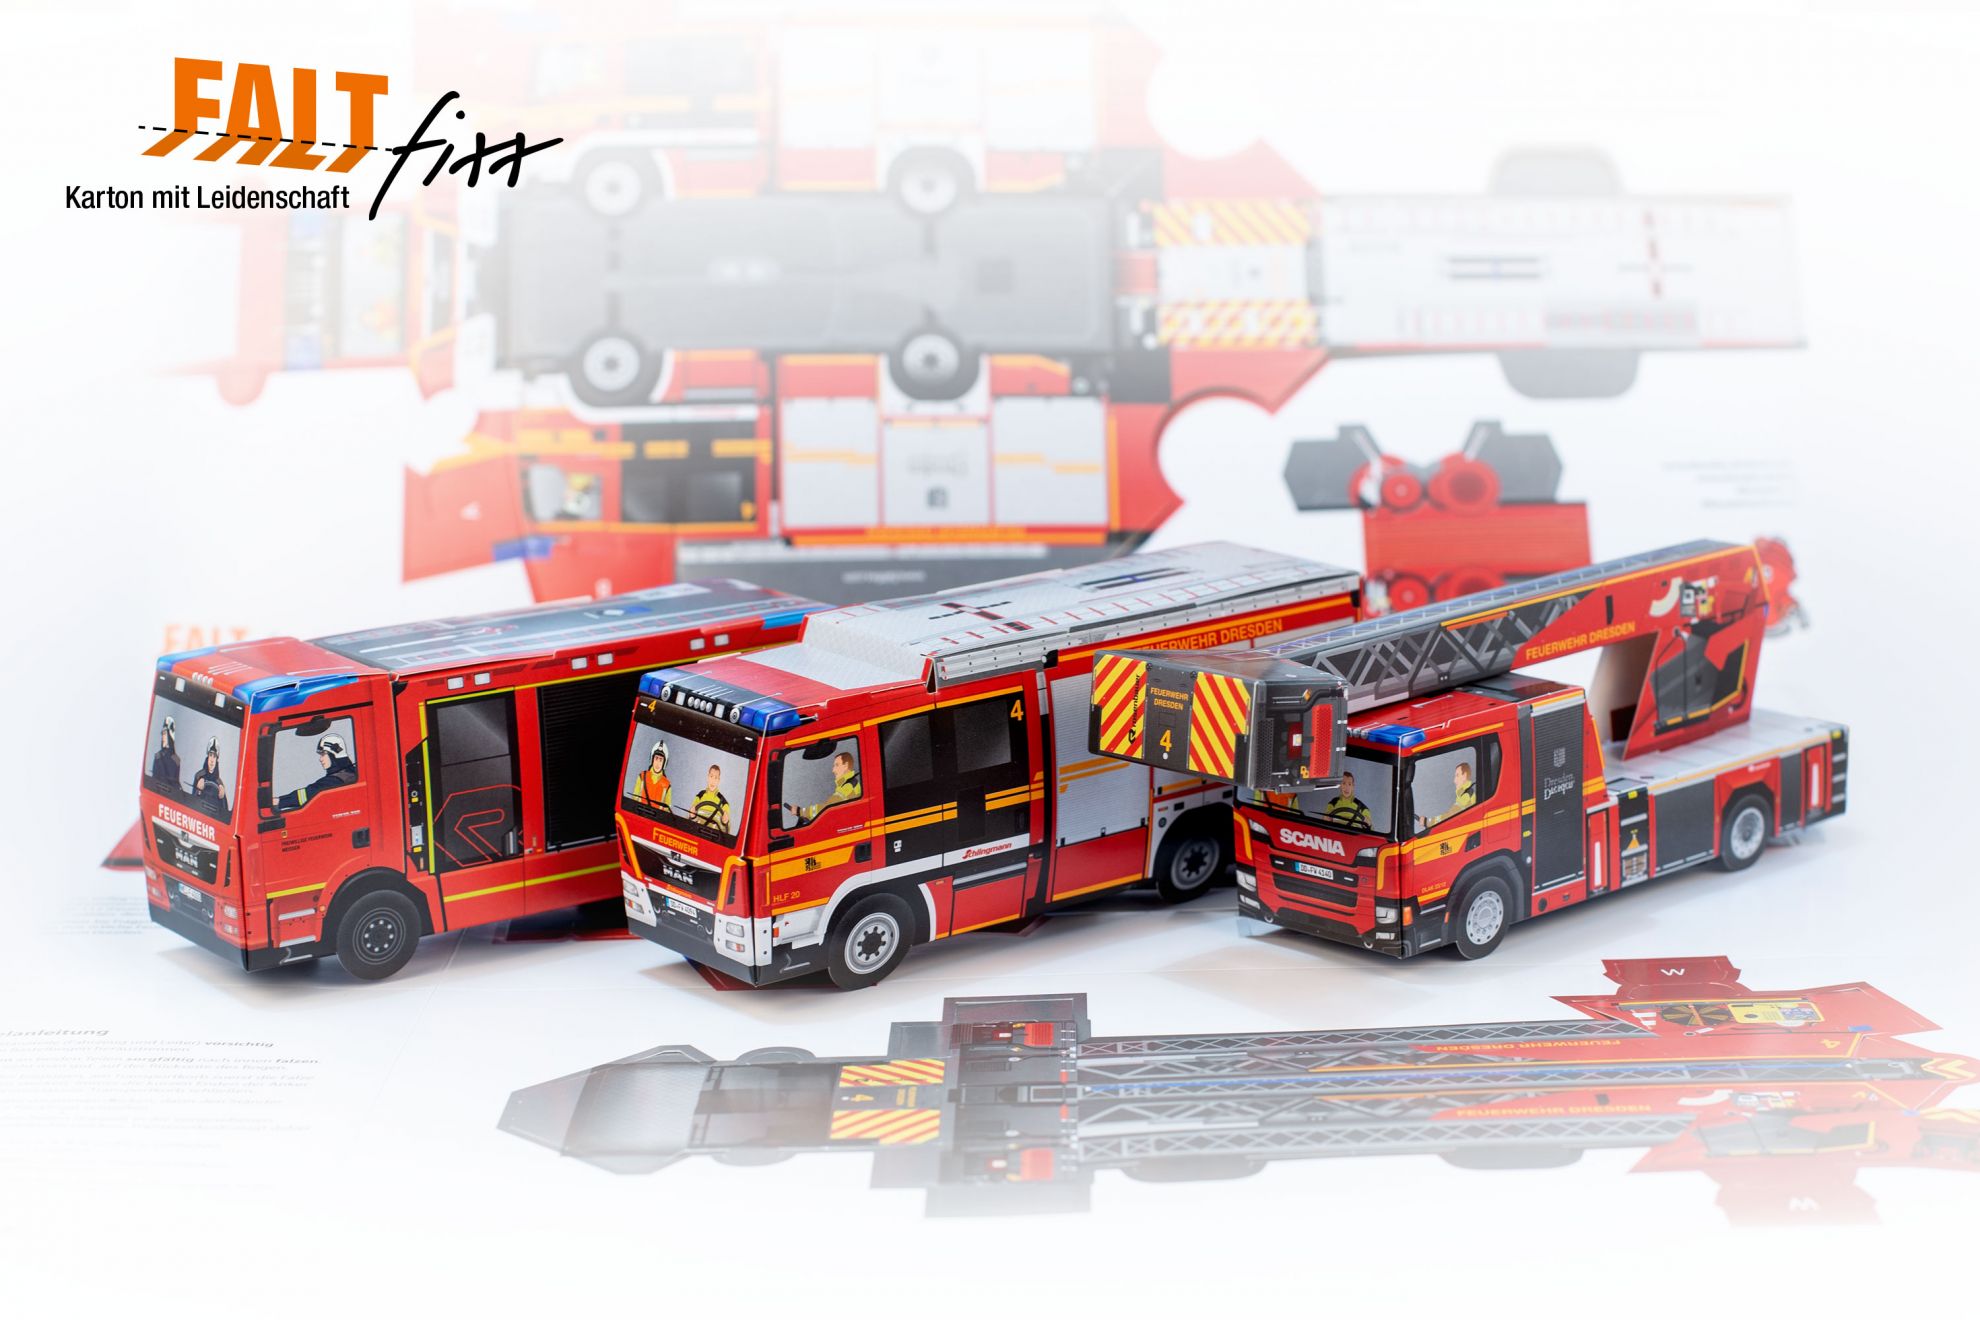 Drei zusammengesteckte Feuerwehrfahrzeuge aus Faltfixx Bastelbögen, im Hintergrund befindet sich ein ausgeklappter Bastelbogen